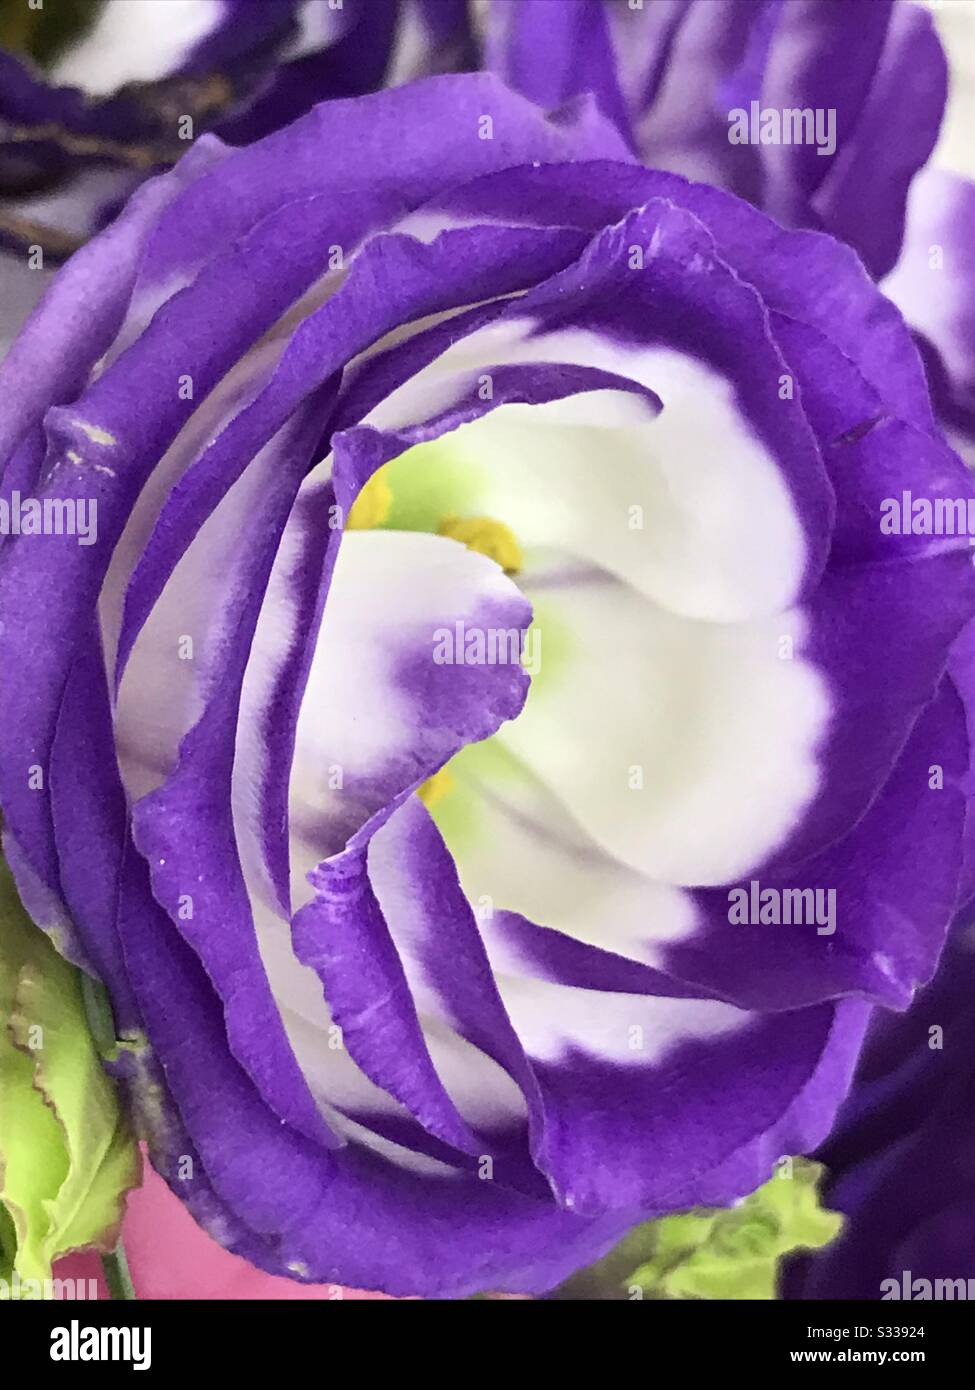 Dünne Gewebeschichten verleihen Ranunculus Tomer Picotee Blumen eine Rose  wie Schönheit, Lang anhaltende Schnittblumen in einer Blumenstrauß - blaue  Blume ähnlich Rosen alias lila Blume, Butterbecher - Farbwechsel  Stockfotografie - Alamy